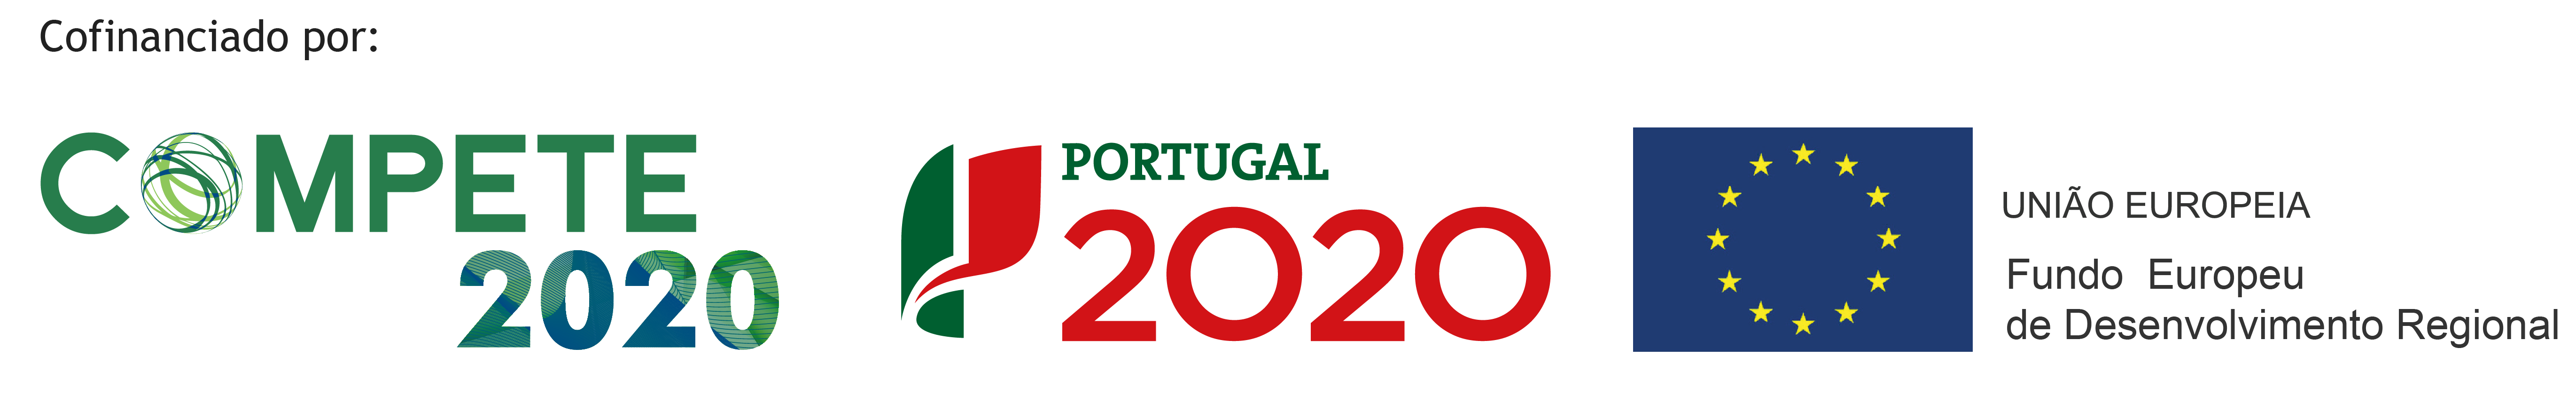 logo de orgãos portugueses centro 2020, união européia e Portugal2020 